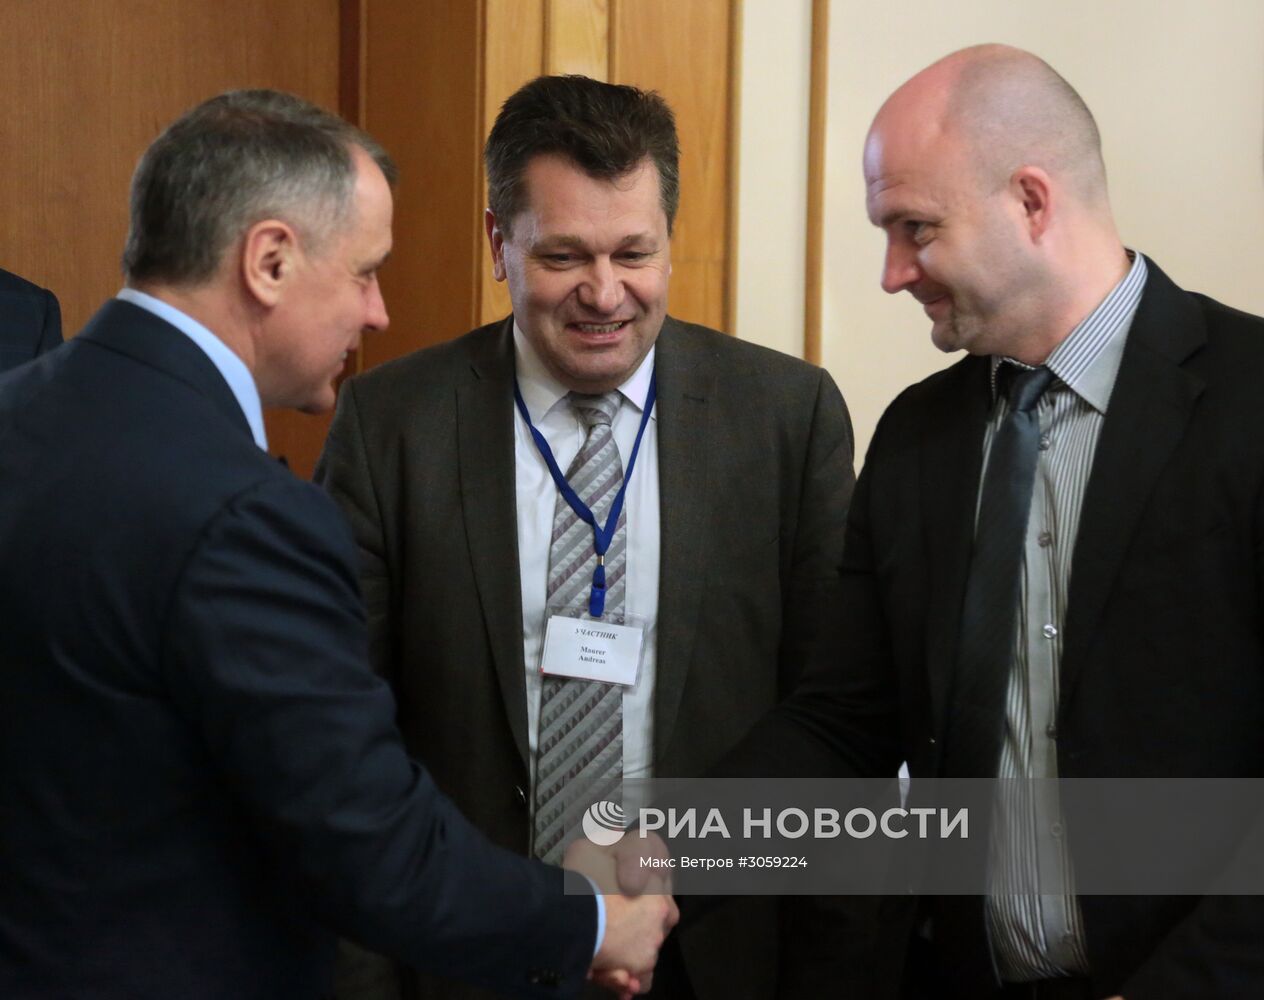 Прибытие делегации политиков и бизнесменов из Германии в Крым